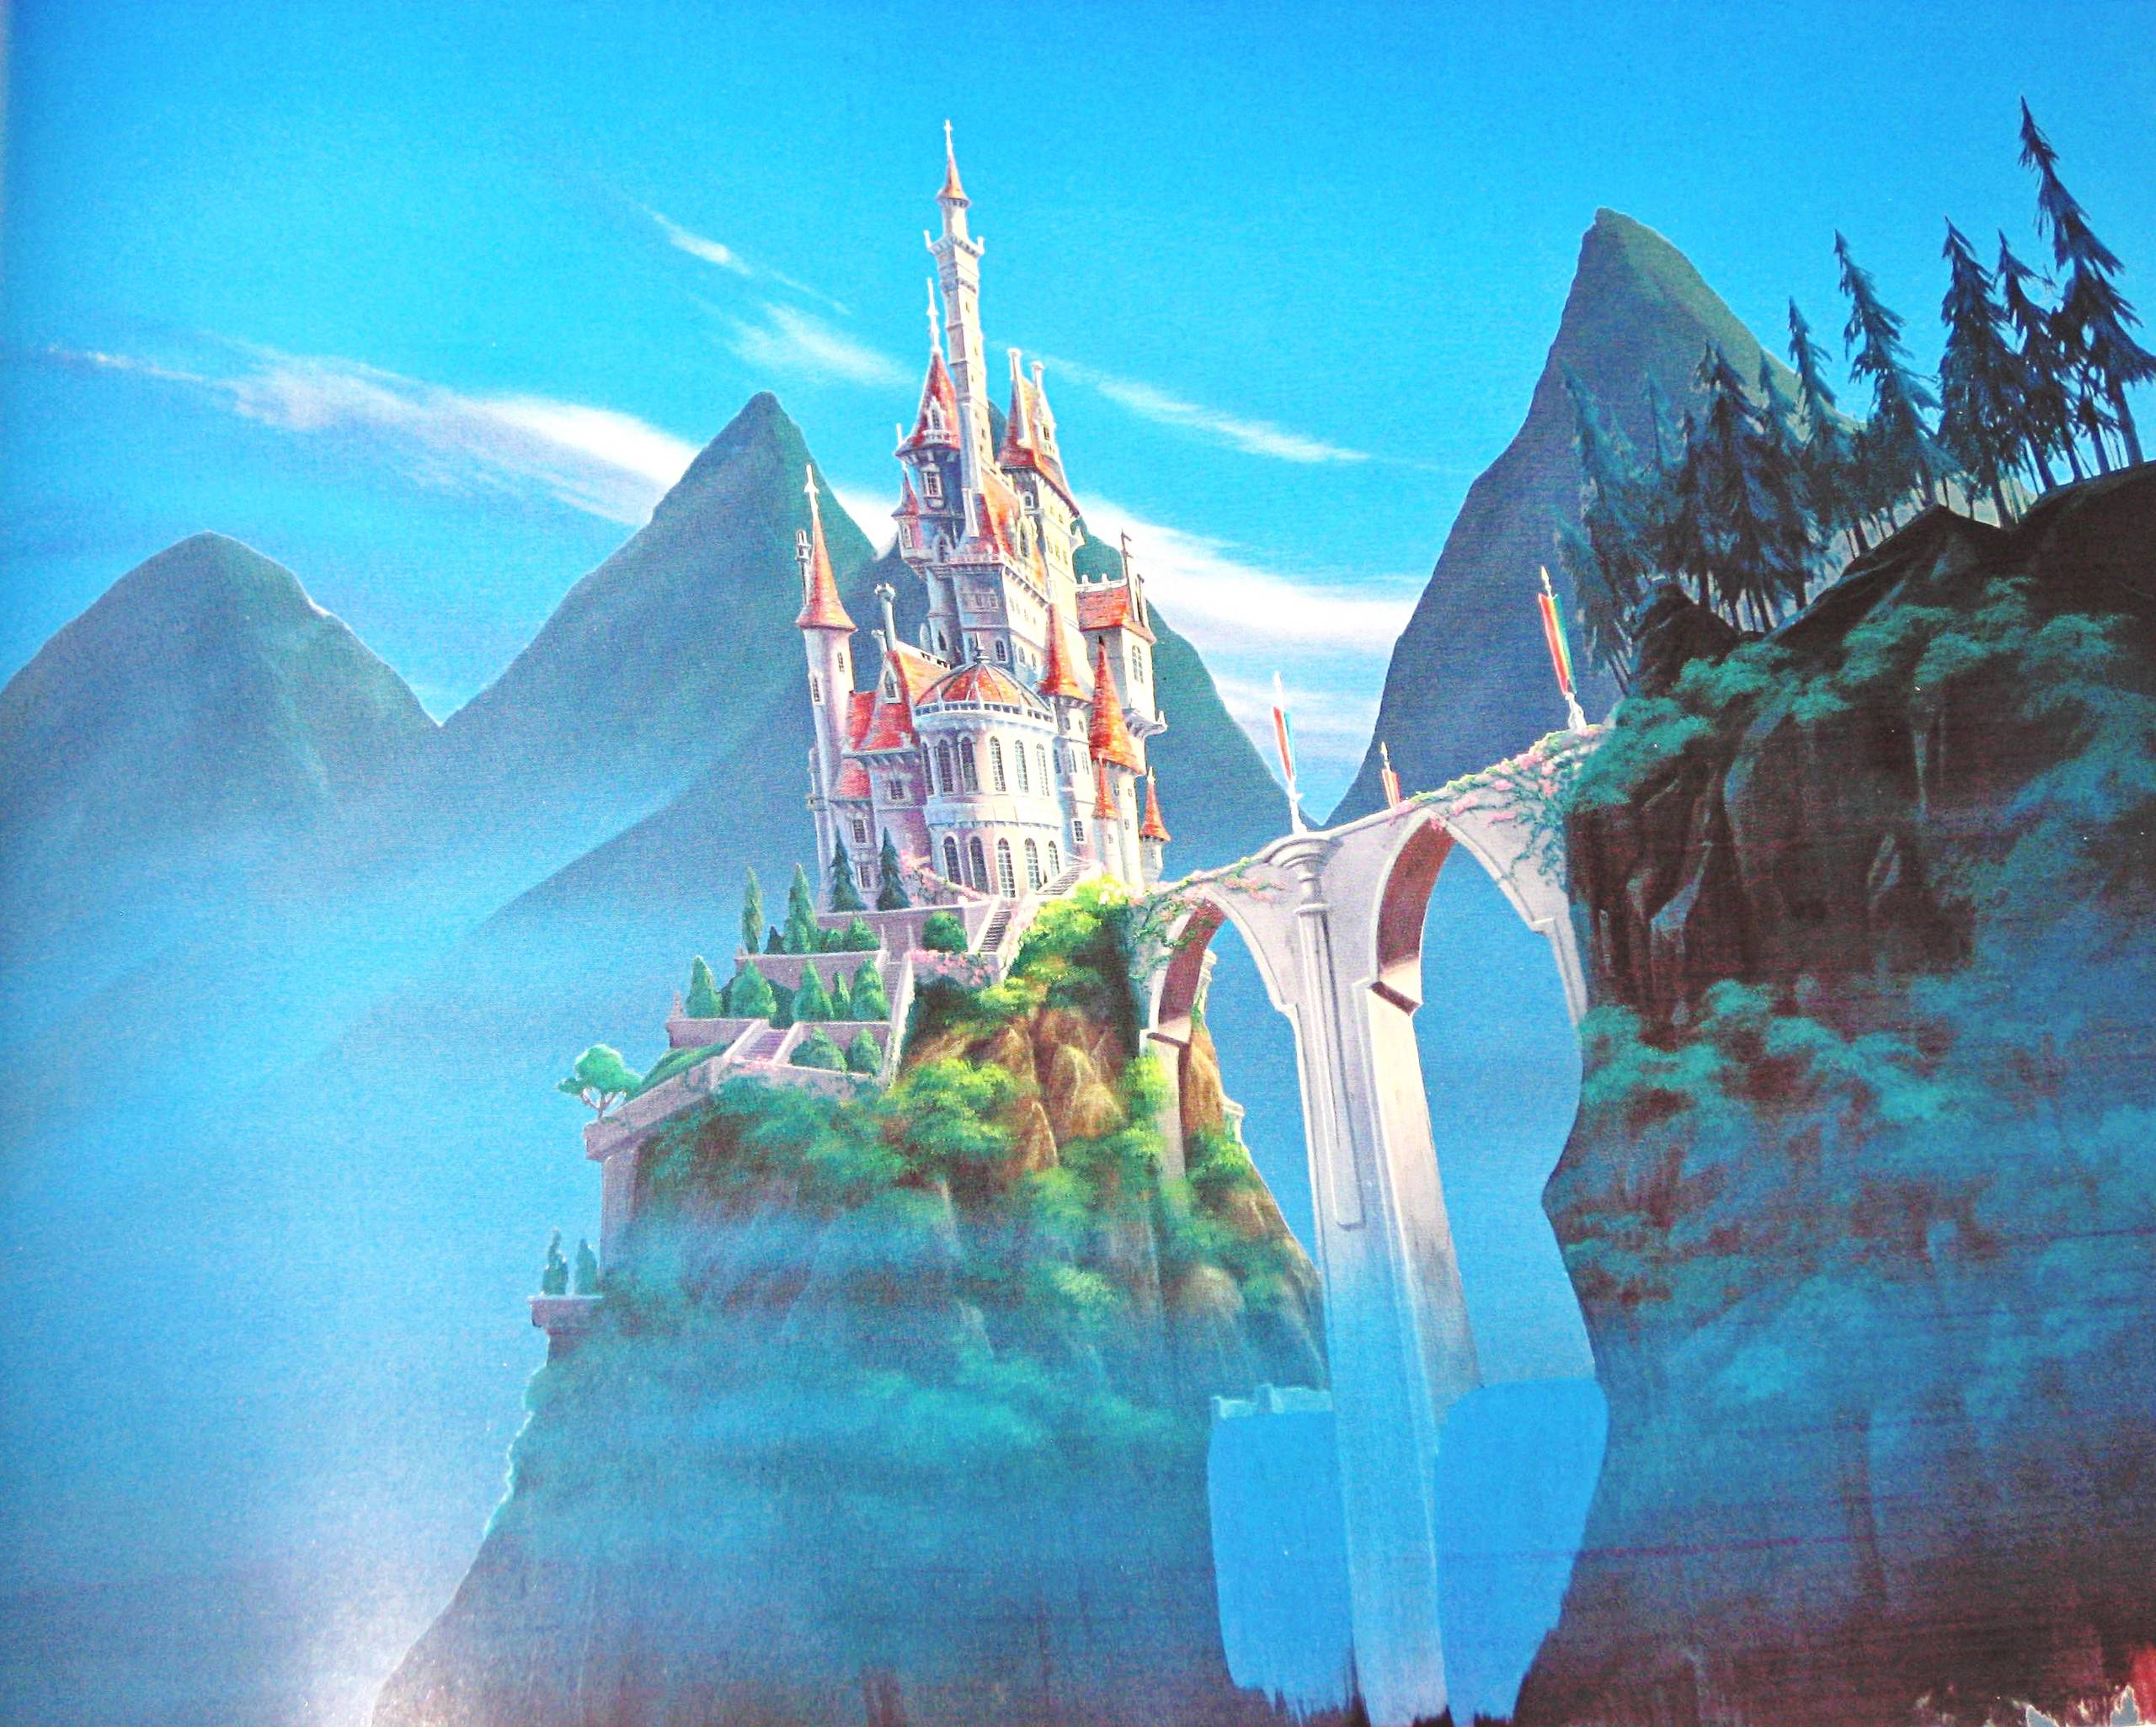 Disney Castle Backgrounds